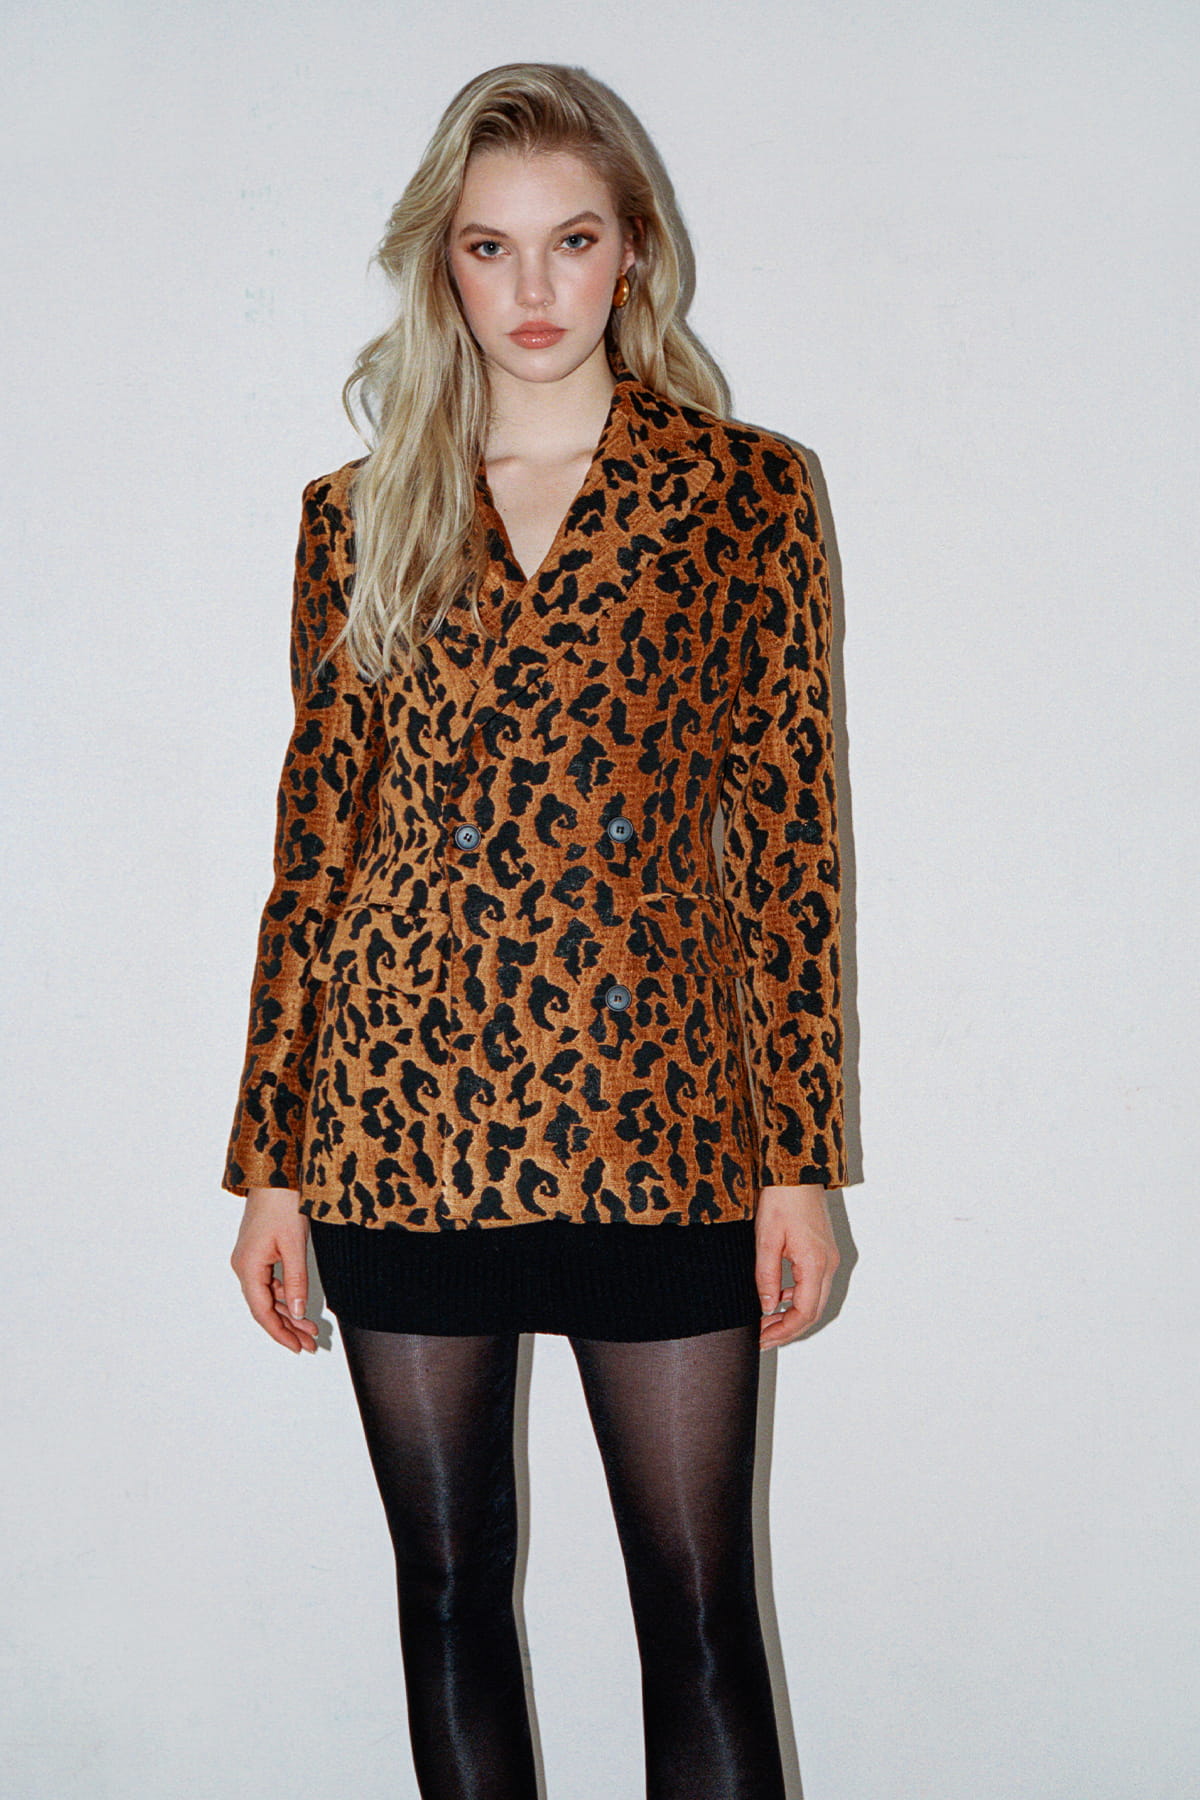 RAVEL Velvet Leopard Patterned Jacket